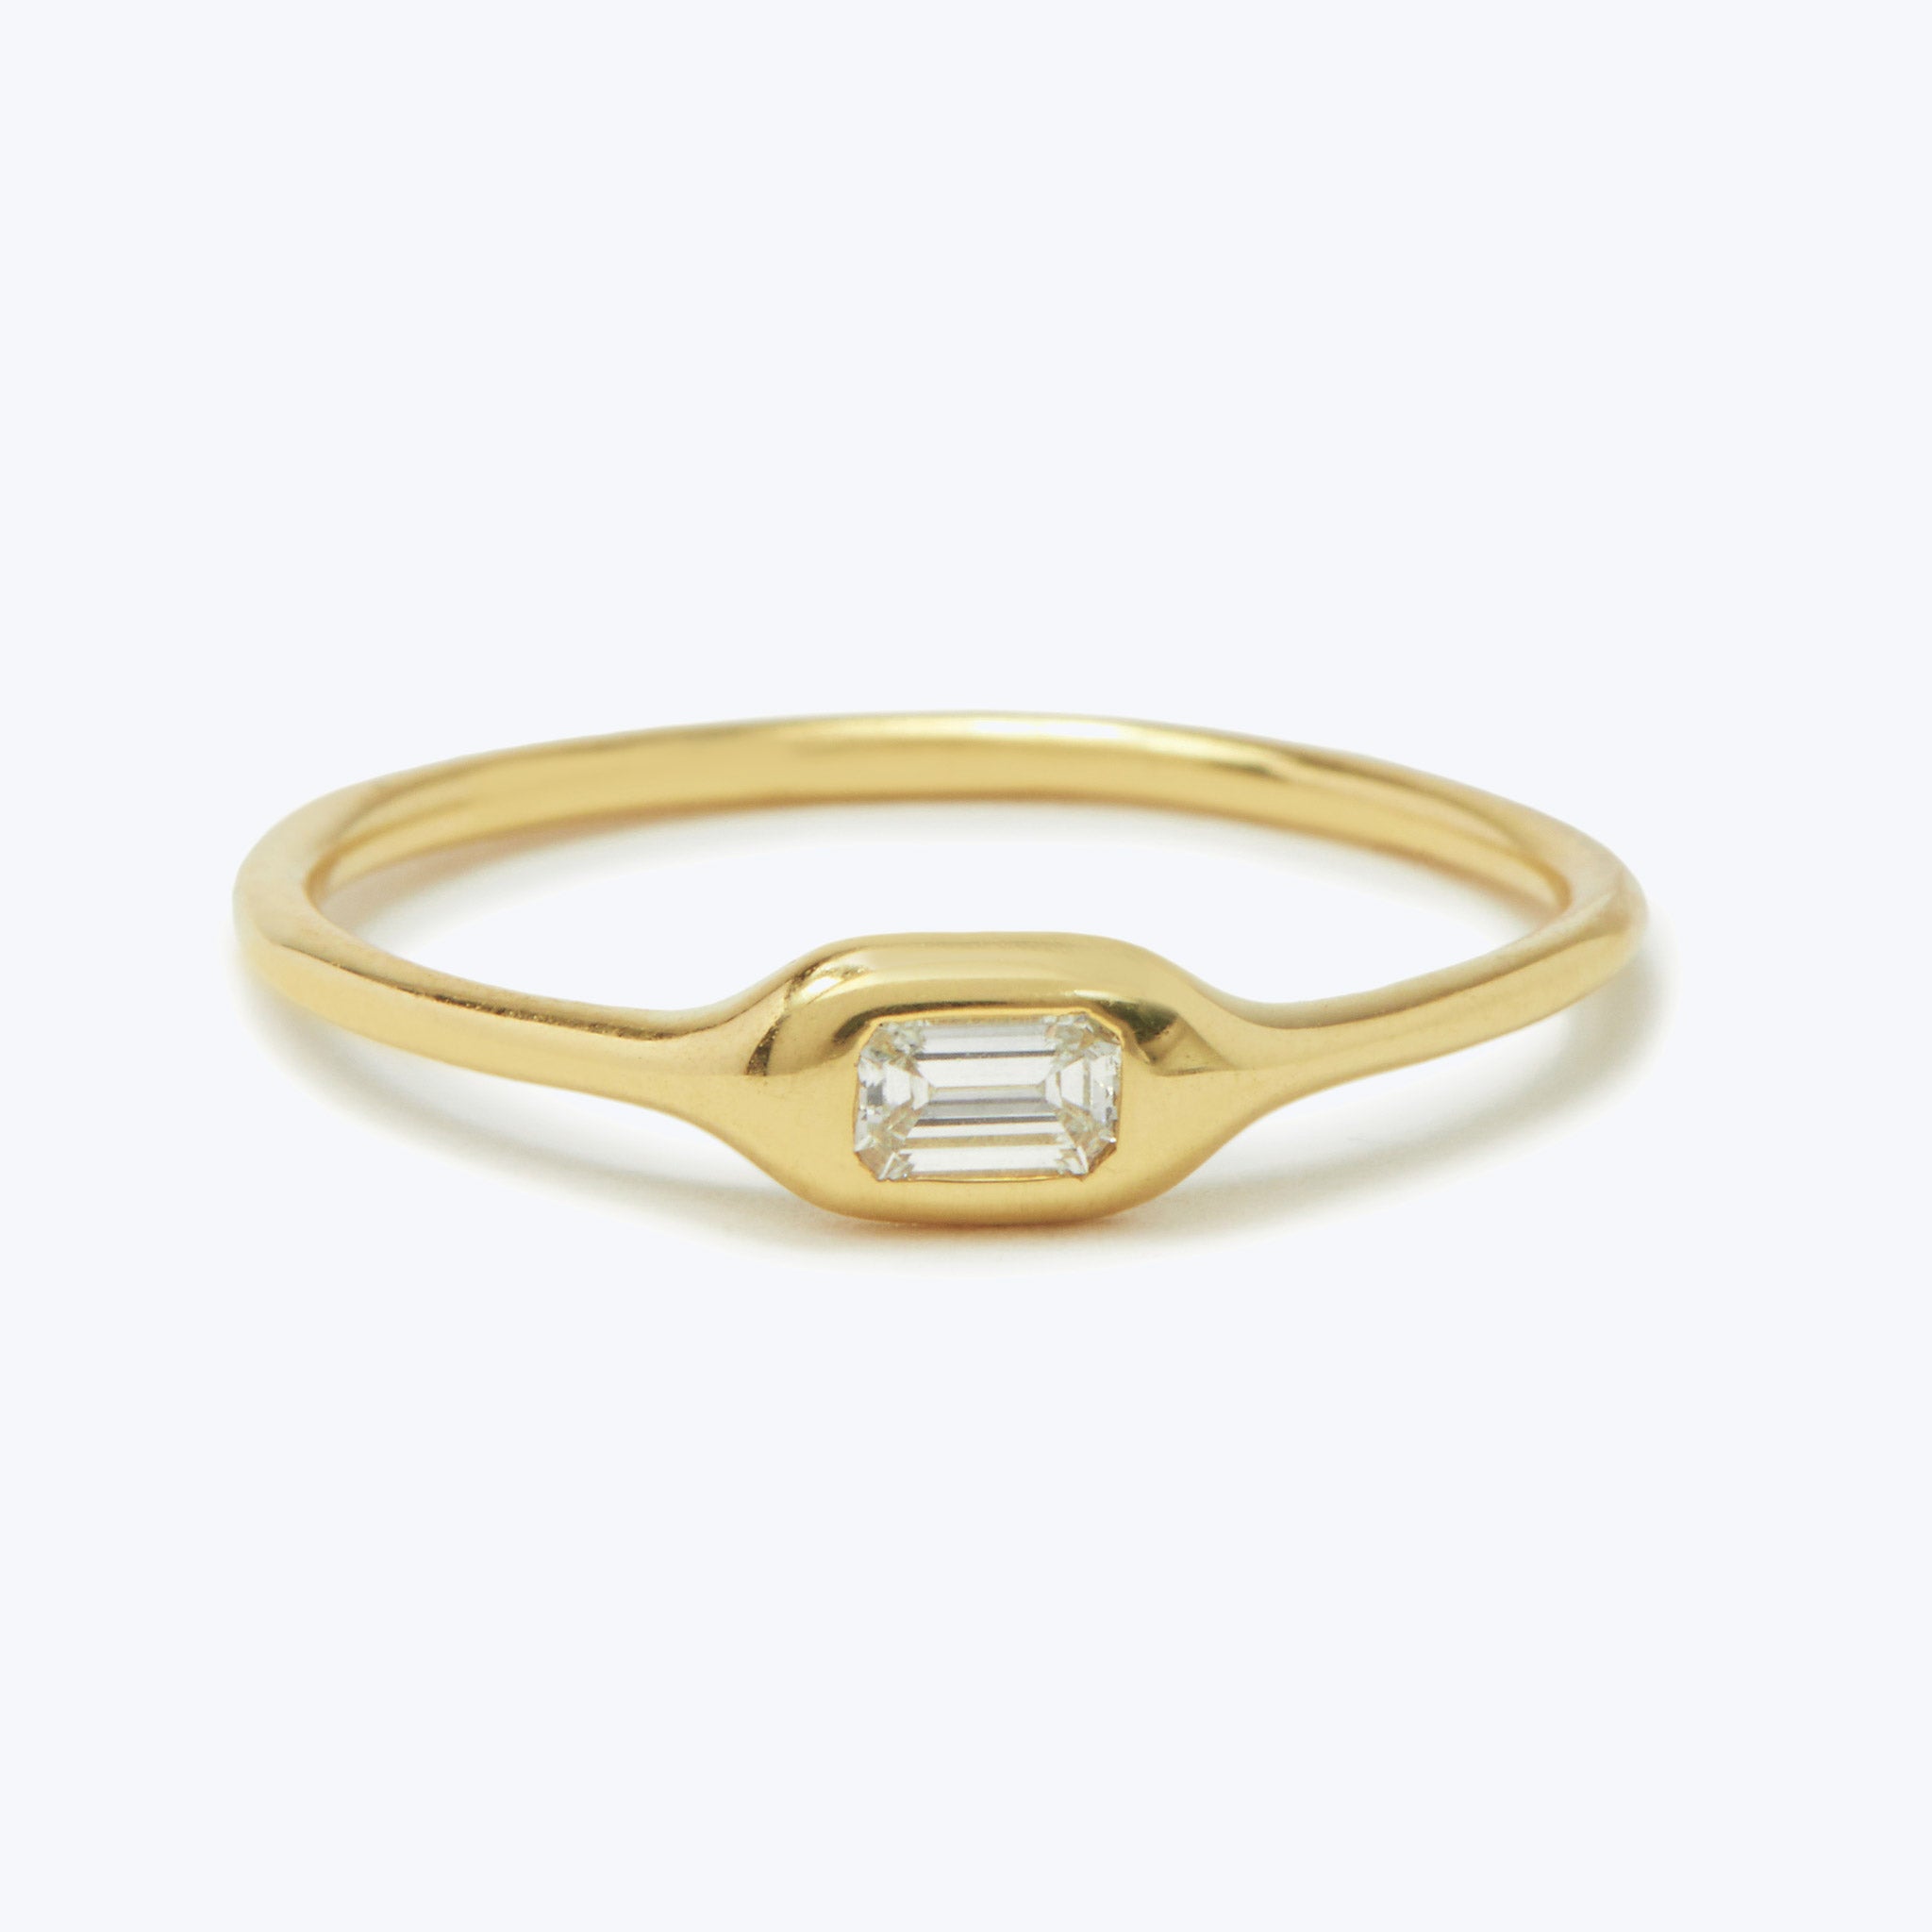 The Azalea Baguette Ring